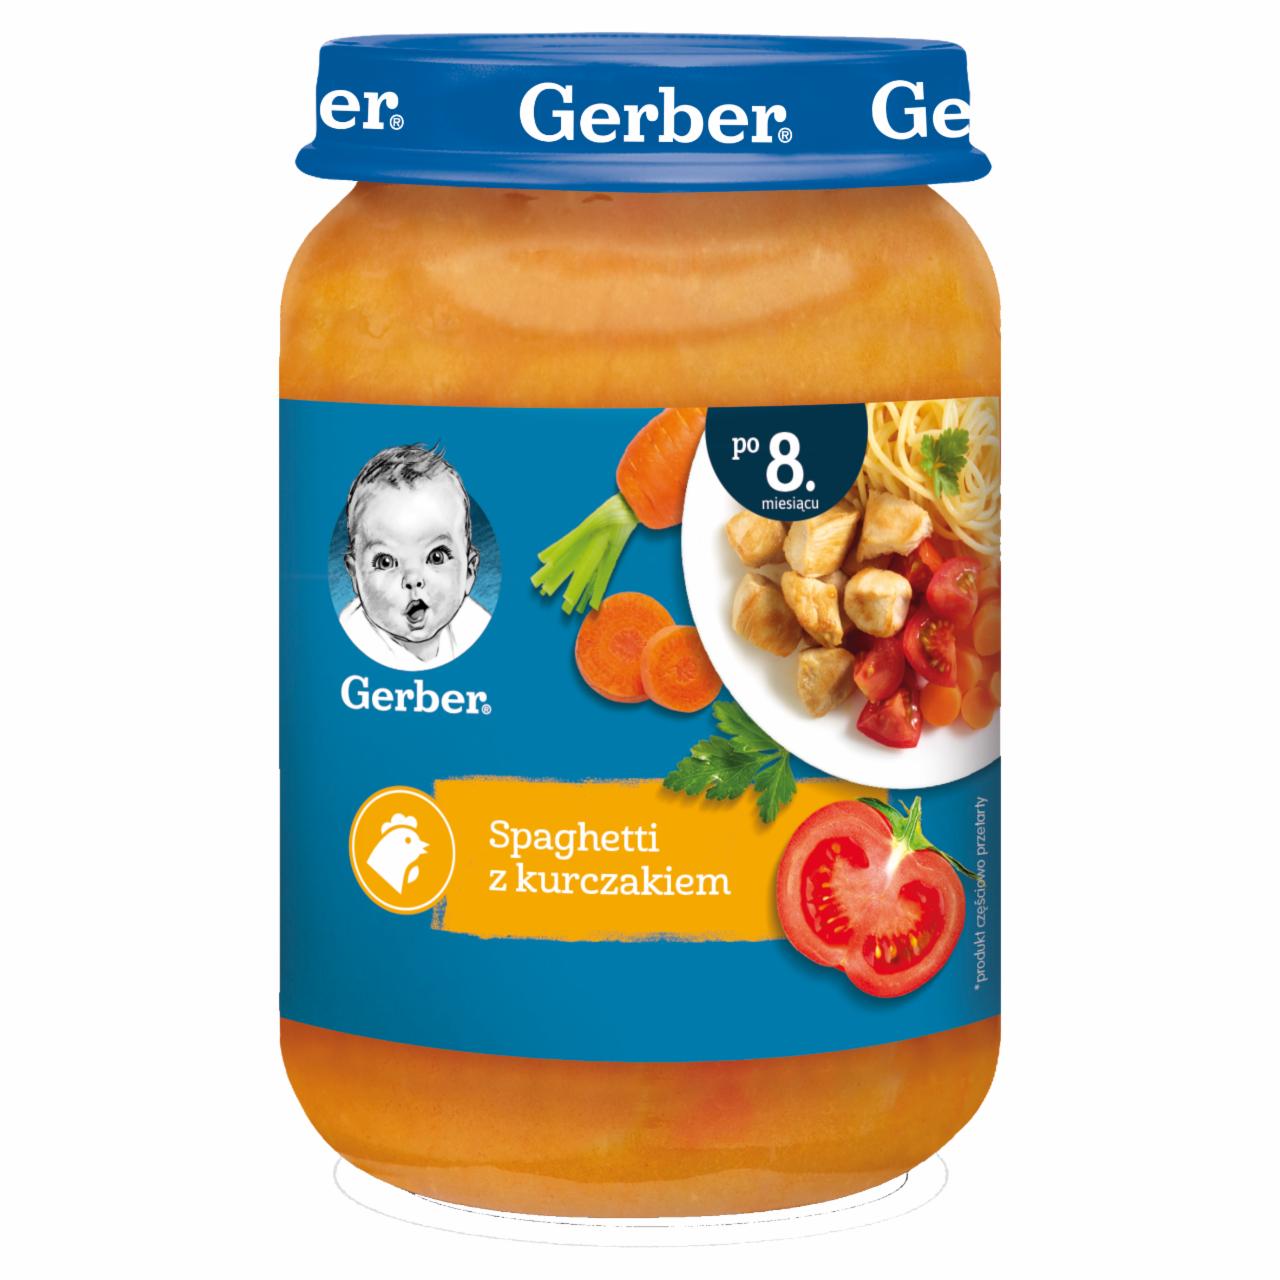 Zdjęcia - Gerber Spaghetti z kurczakiem dla niemowląt po 8. miesiącu 190 g